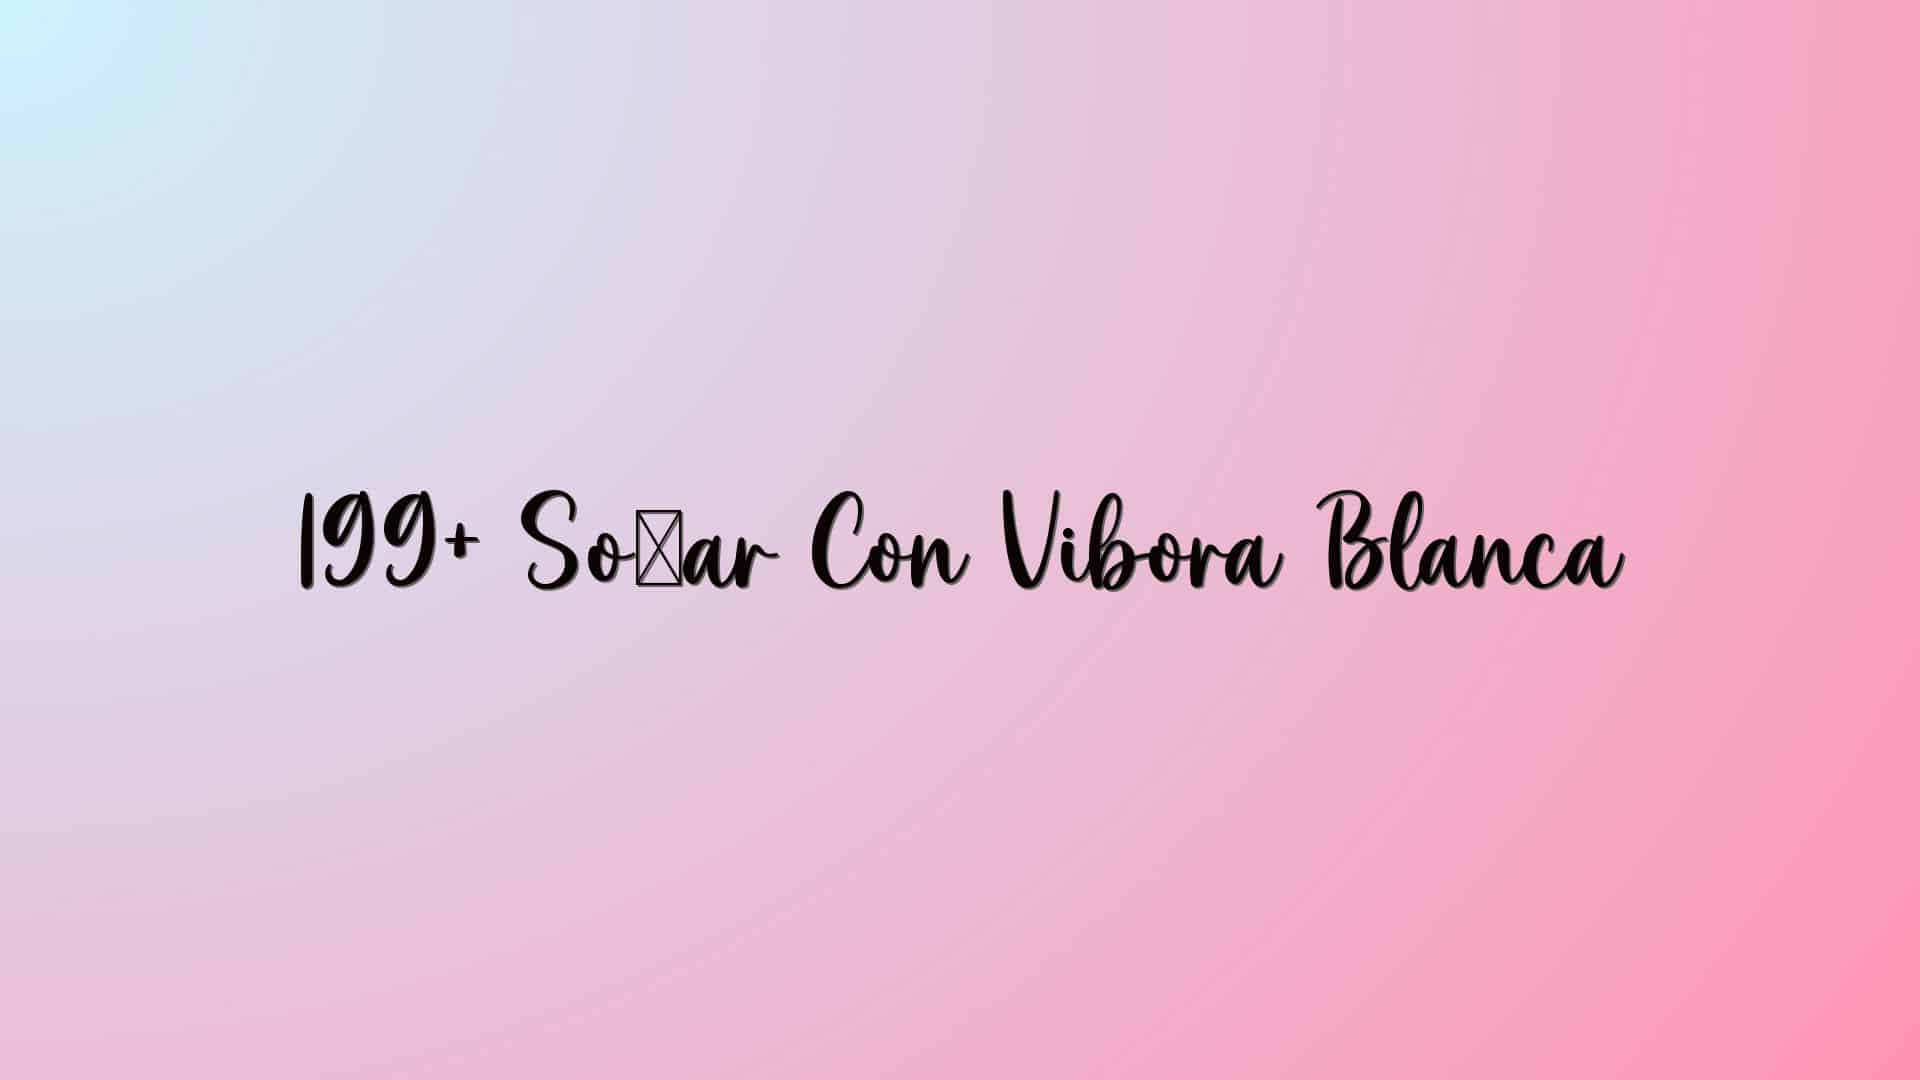 199+ Soñar Con Vibora Blanca